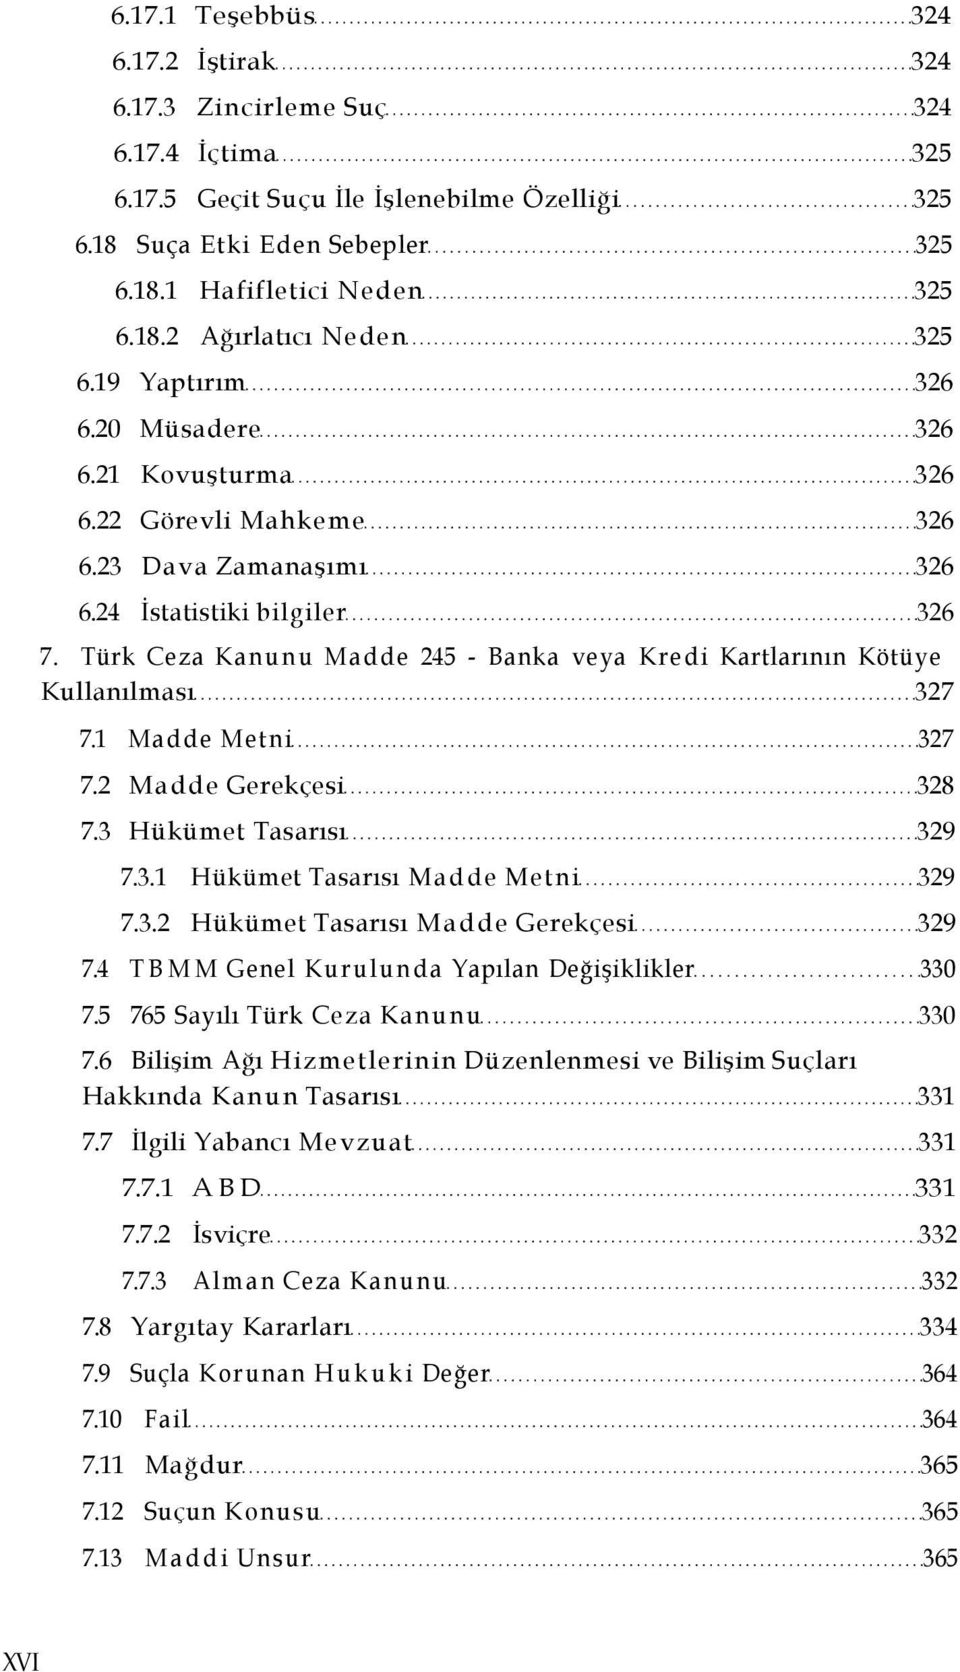 Türk Ceza Kanunu Madde 245 - Banka veya Kredi Kartlarının Kötüye Kullanılması 327 7.1 Madde Metni 327 7.2 Madde Gerekçesi 328 7.3 Hükümet Tasarısı 329 7.3.1 Hükümet Tasarısı Madde Metni 329 7.3.2 Hükümet Tasarısı Madde Gerekçesi 329 7.